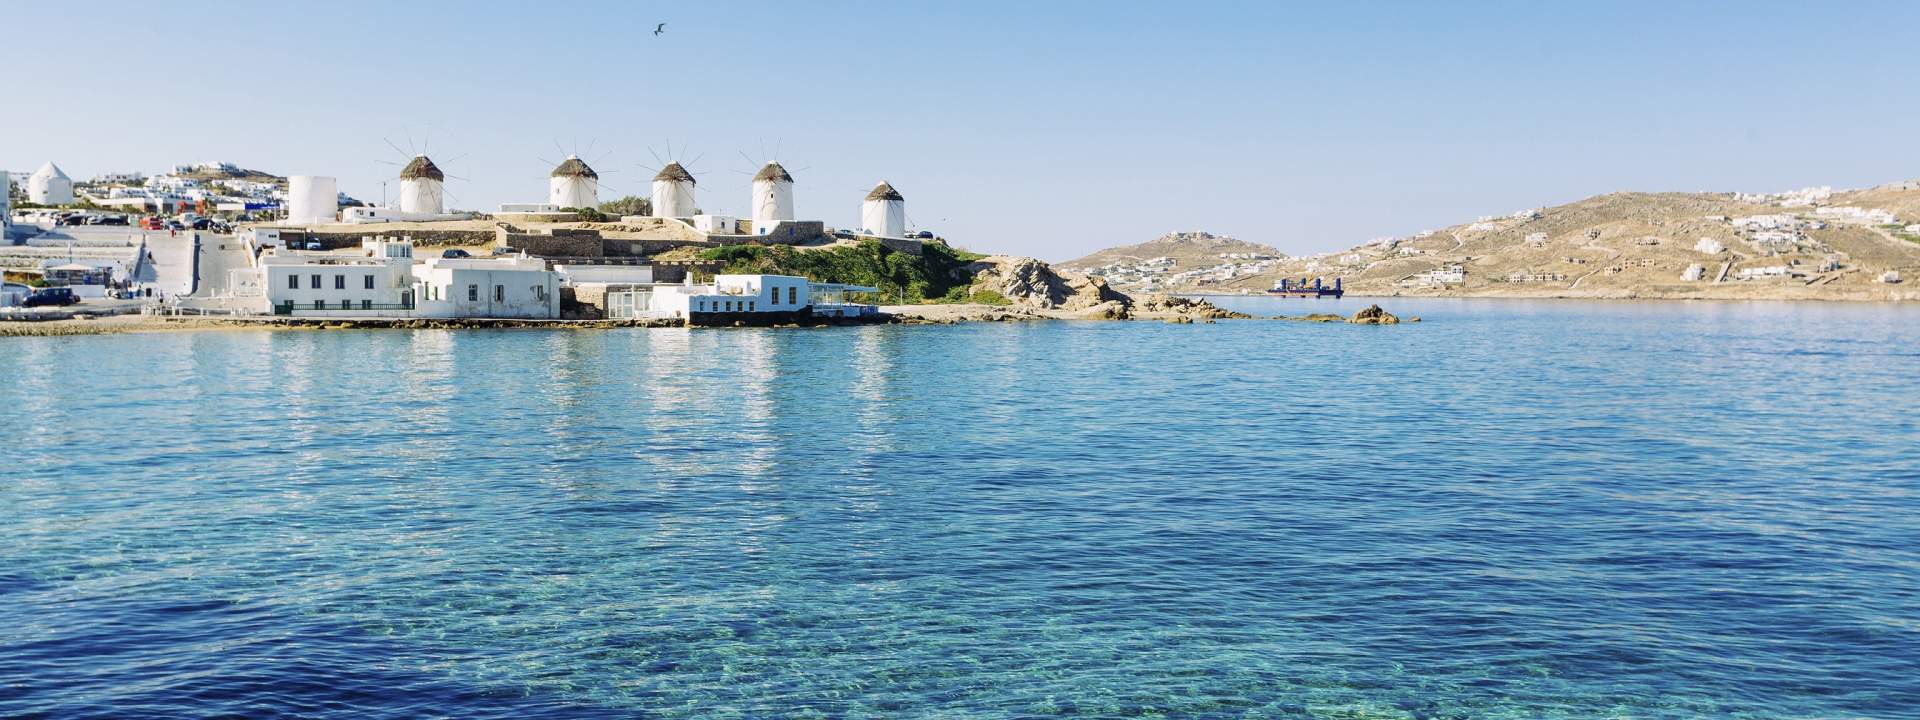 Crociera Pilates in barca a vela nelle isole greche